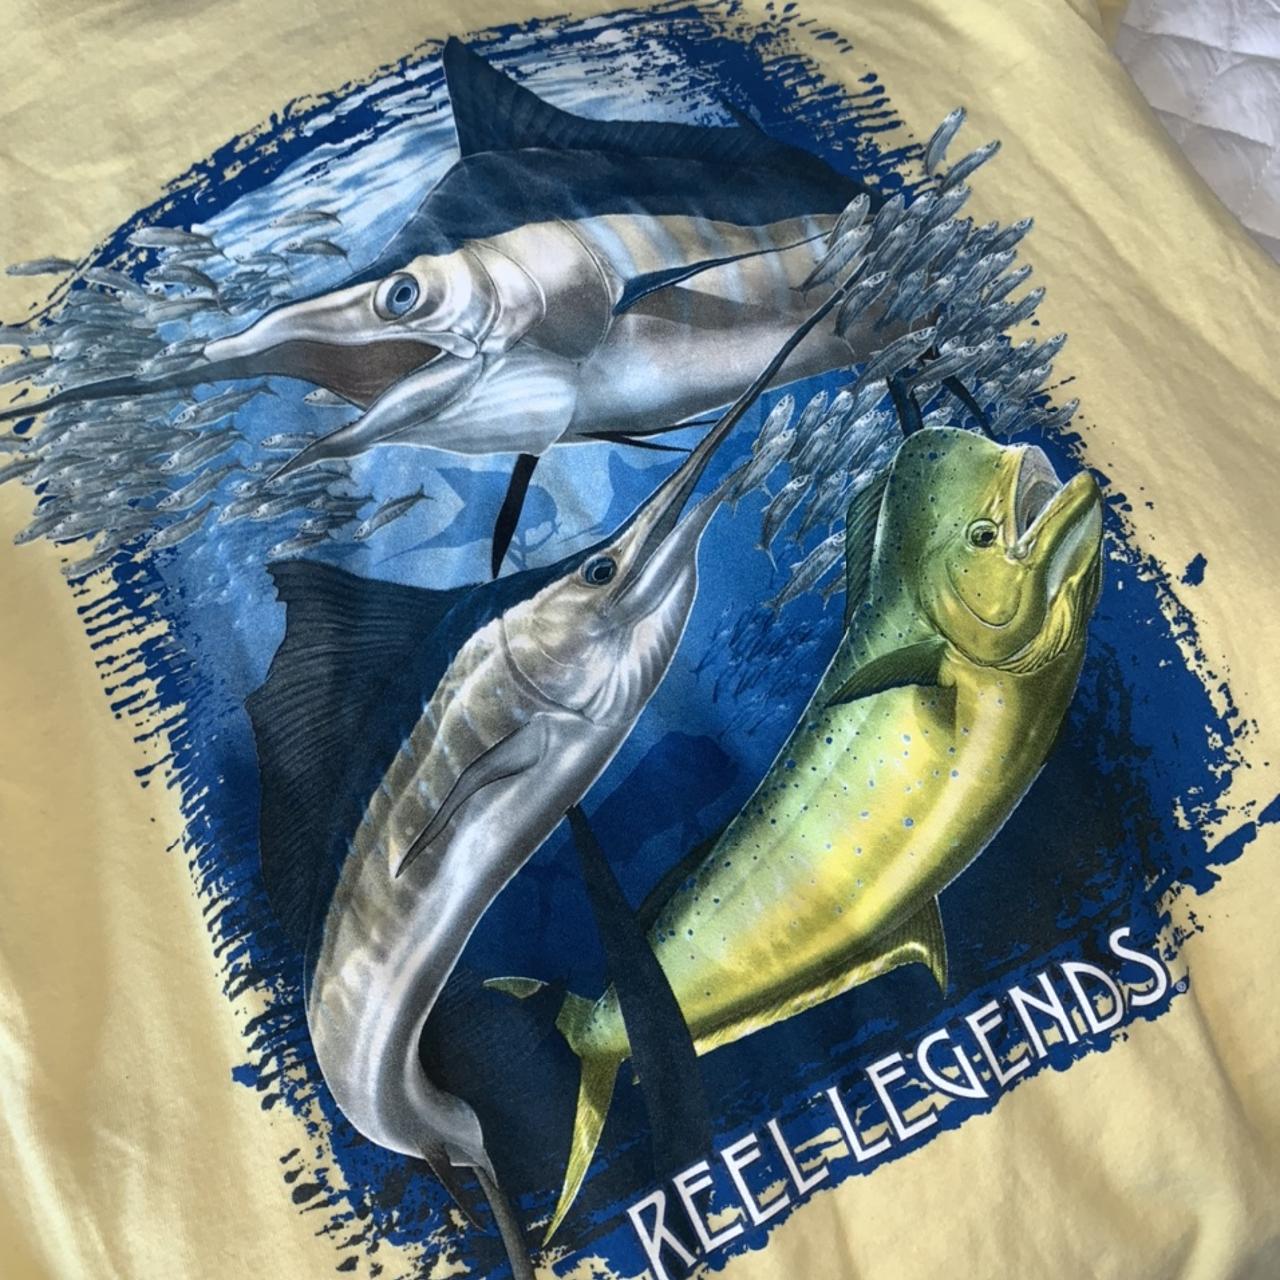 Vintage Reel Legends Fishing Shirt, ~ Excellent